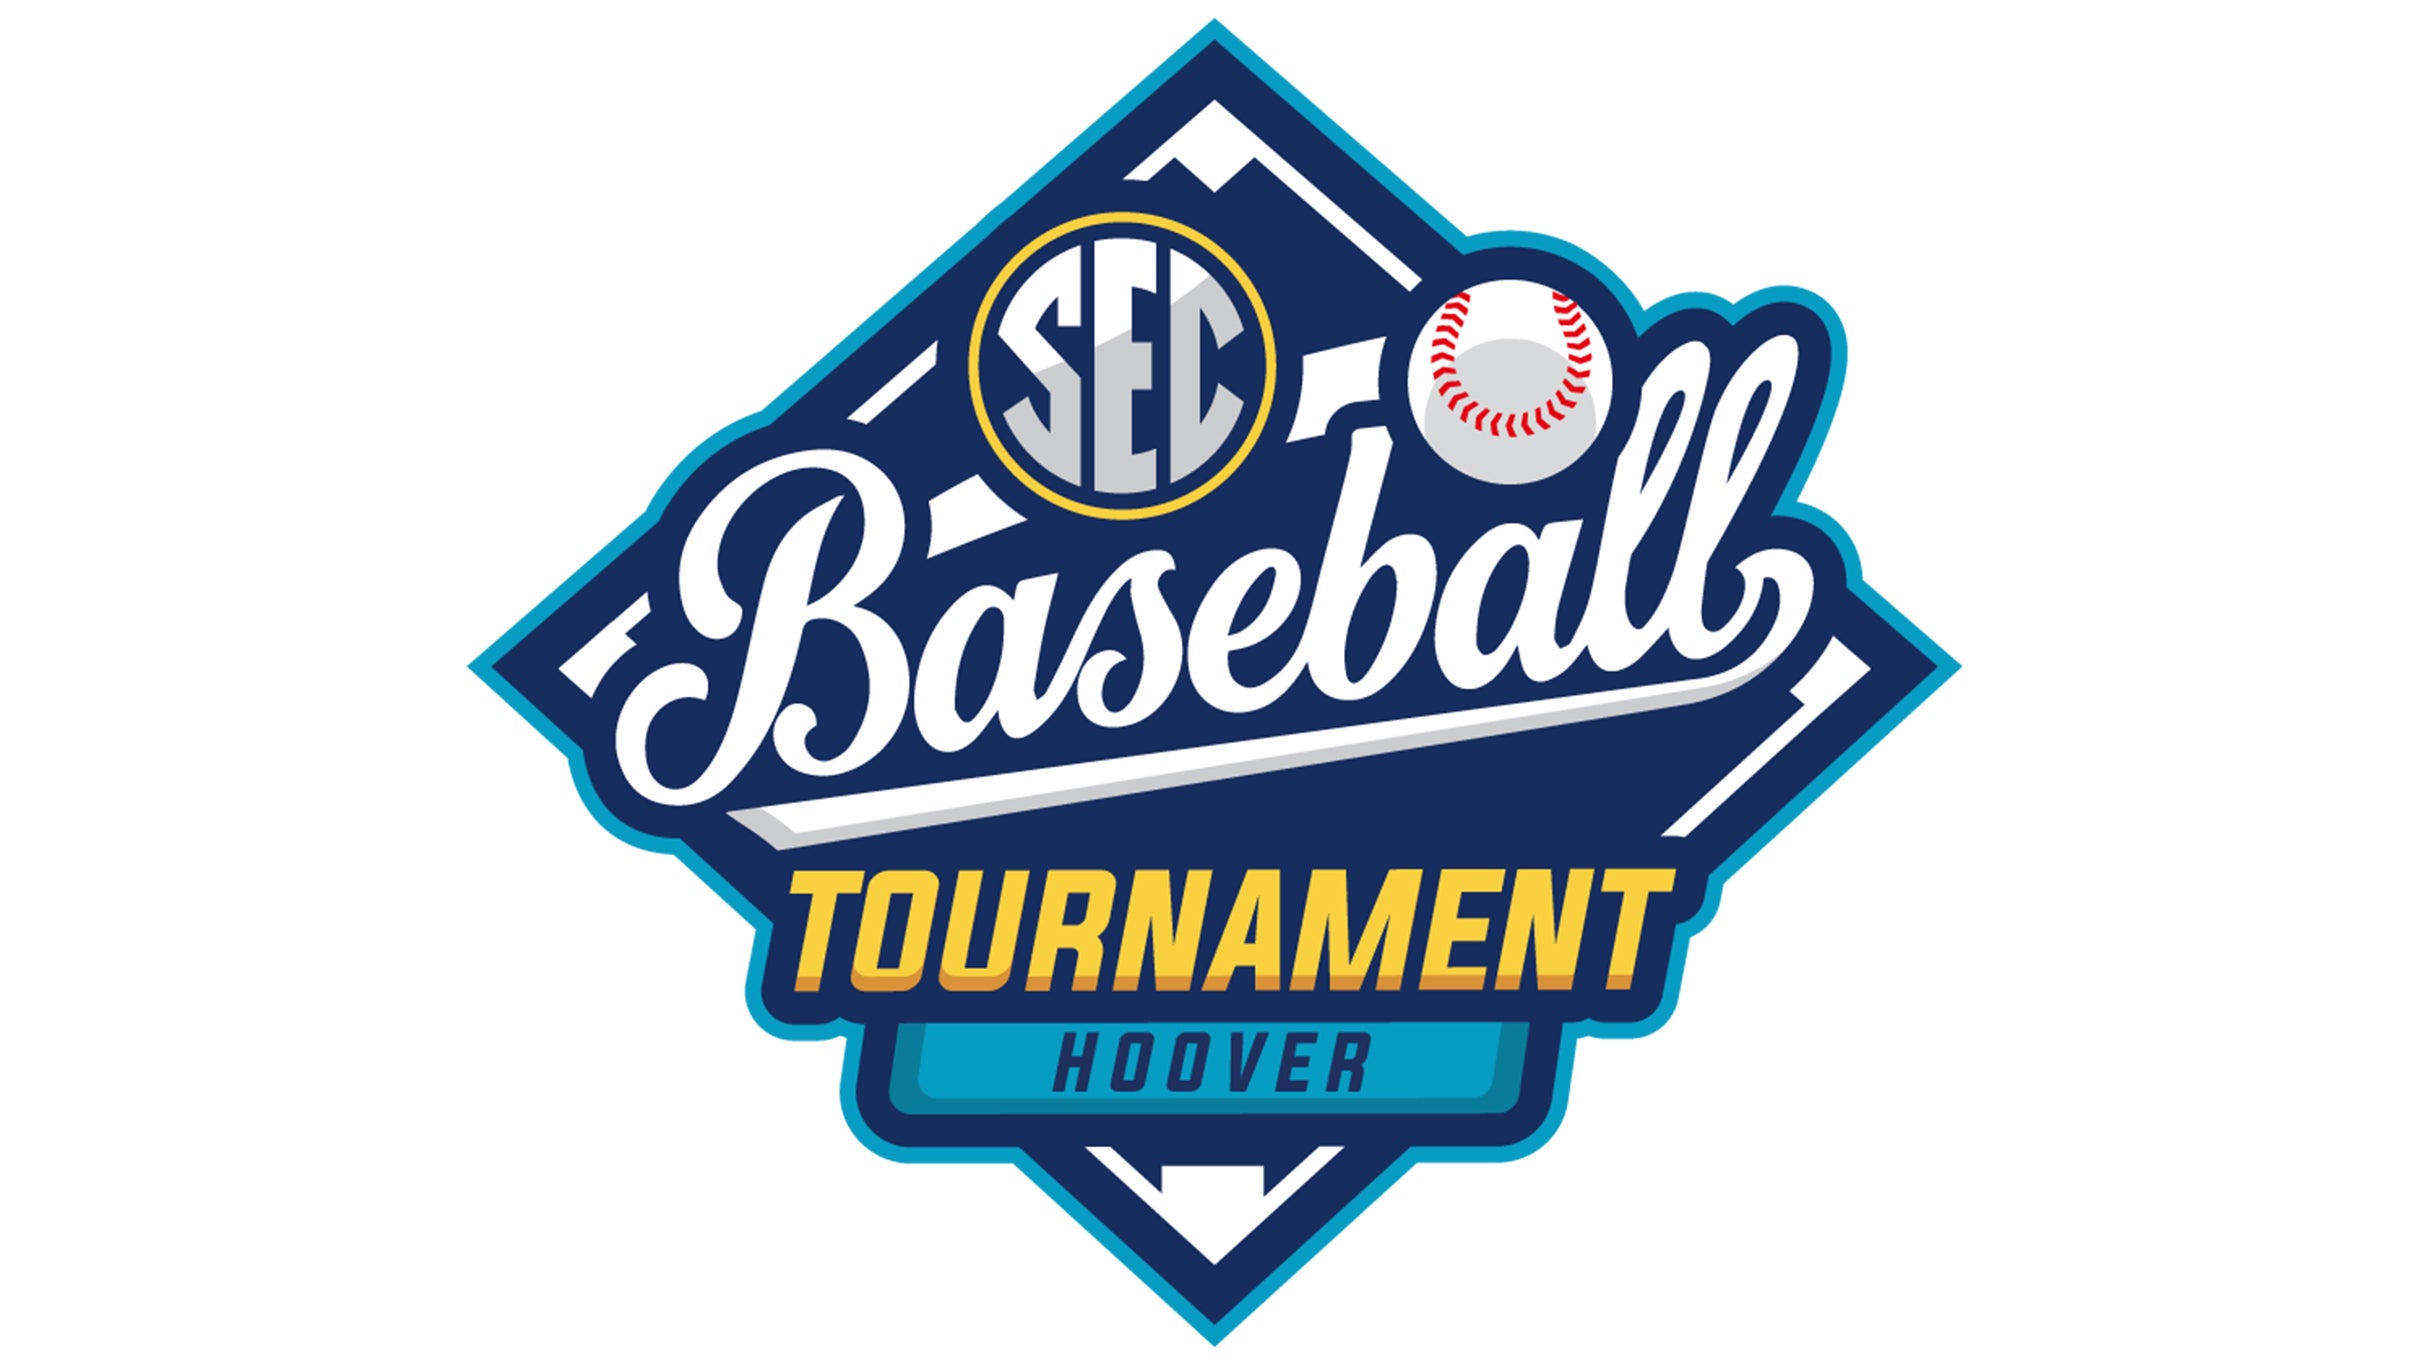 SEC Baseball Tournament Session 1- GA vs LSU - AL vs SC presales in Hoover